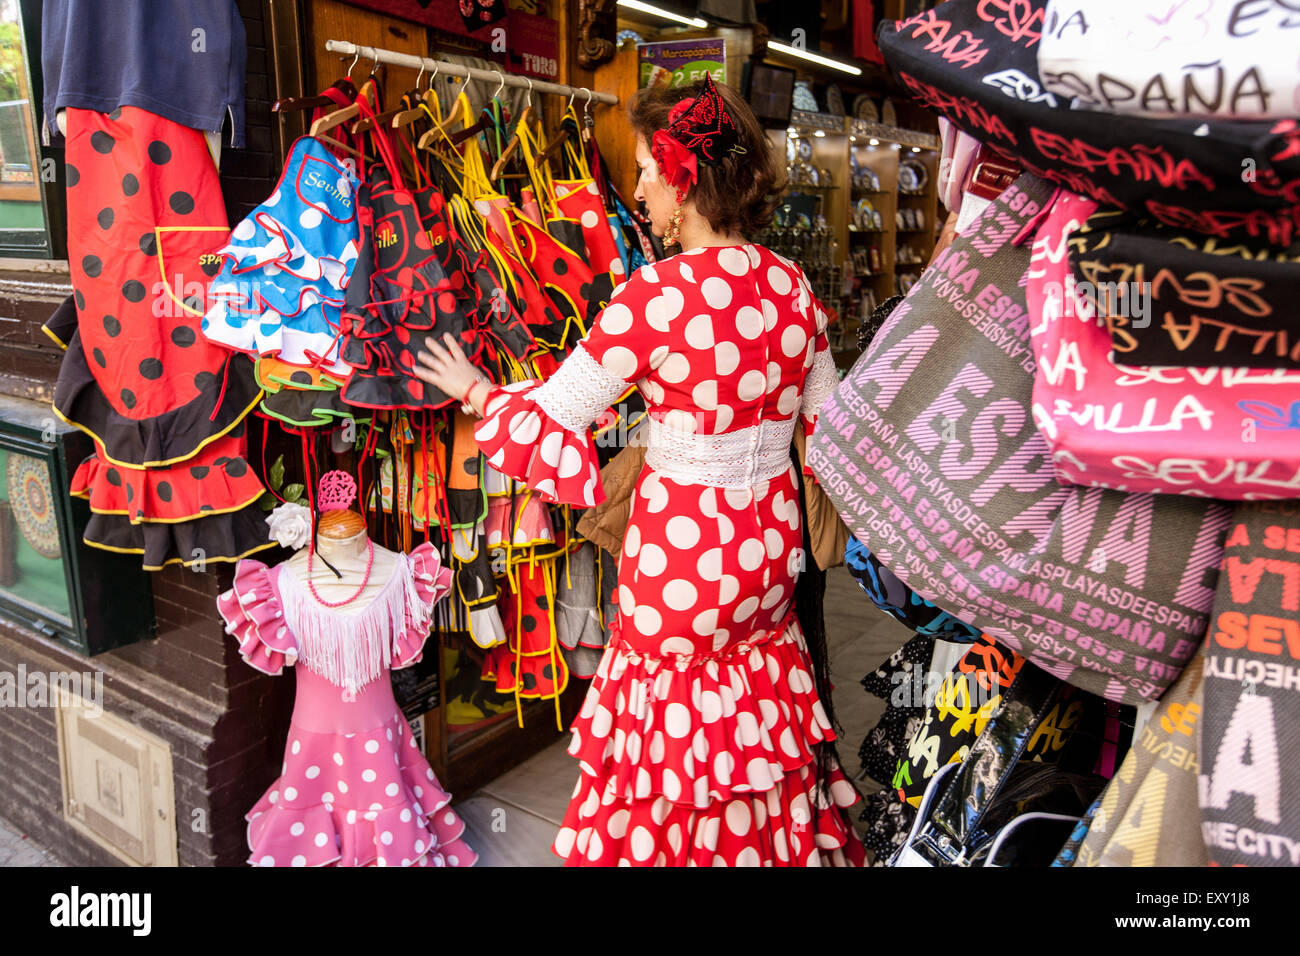 En el tradicional vestido de Sevilla Sevilla mirando a través de la en esta tienda turística en el casco antiguo de Sevilla, Andalucía, España, Euro Fotografía de stock -